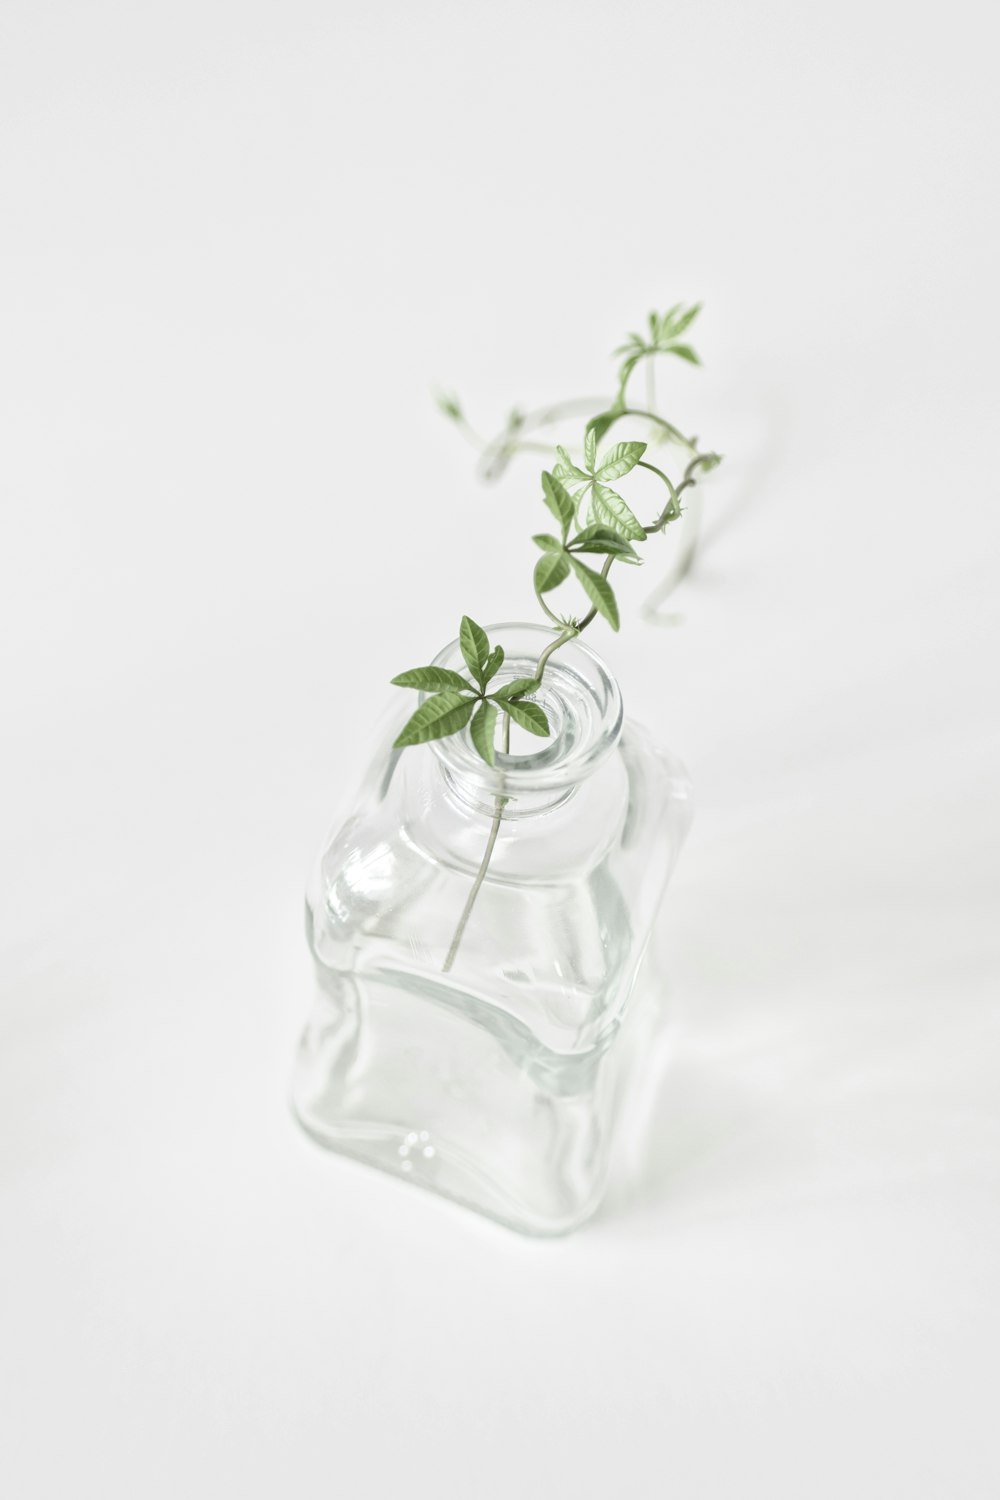 Plante verte dans une bouteille en verre transparent